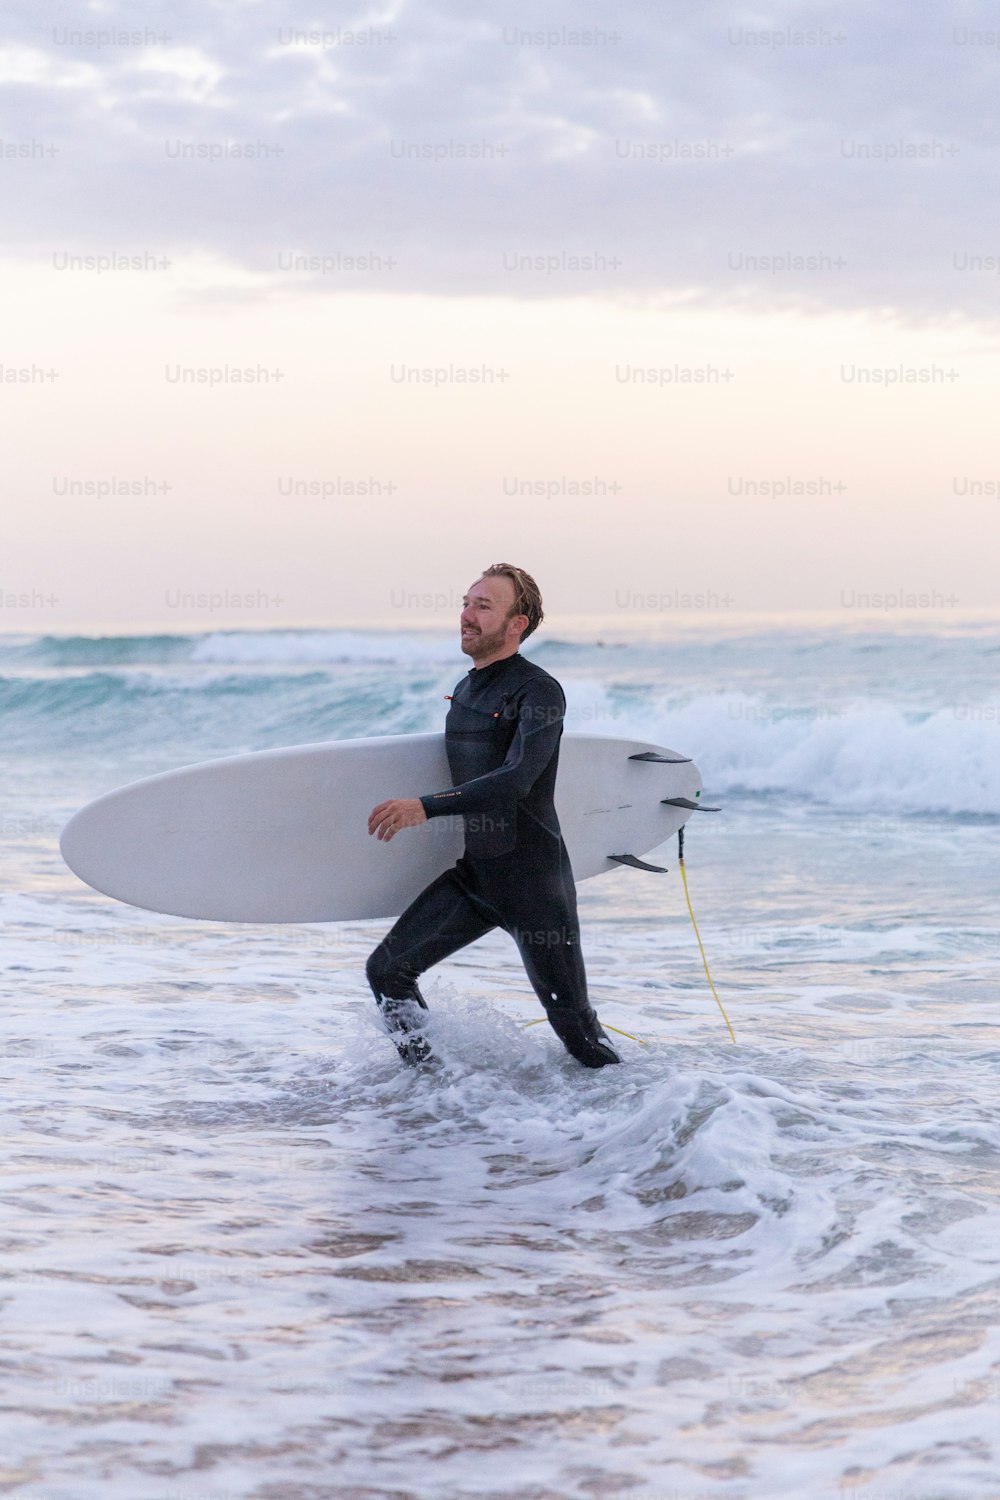 잠수복을 입은 남자가 서핑보�드를 바다로 들고 있다